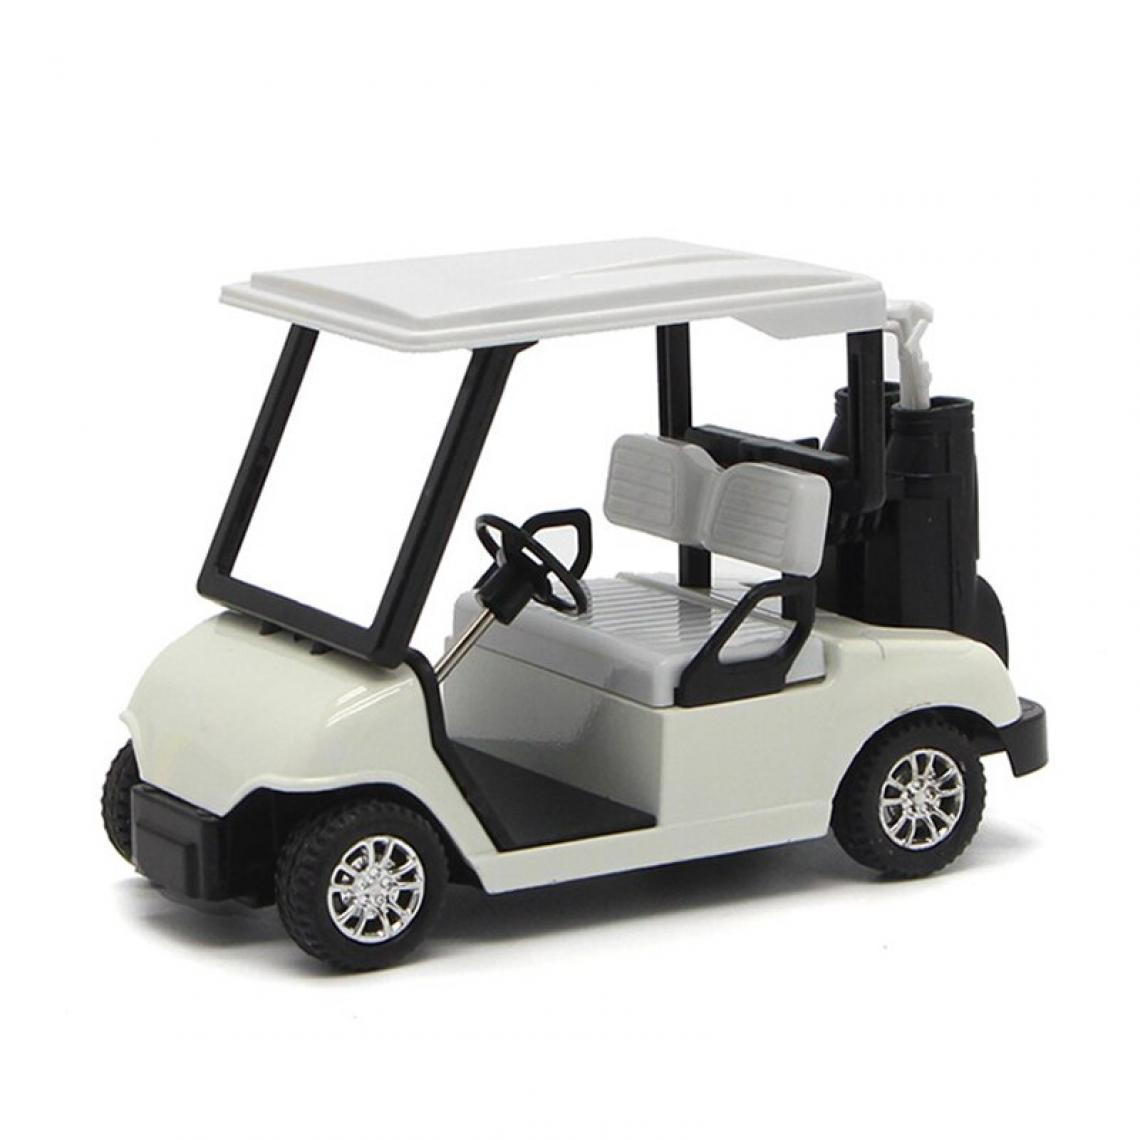 Universal - Chariot de golf électro-pneumatique en alliage moulé sous pression pour récupérer le modèle de voiture écologique collection de cadeaux pour enfants | Chariot jouet moulé sous pression (blanc) - Voitures